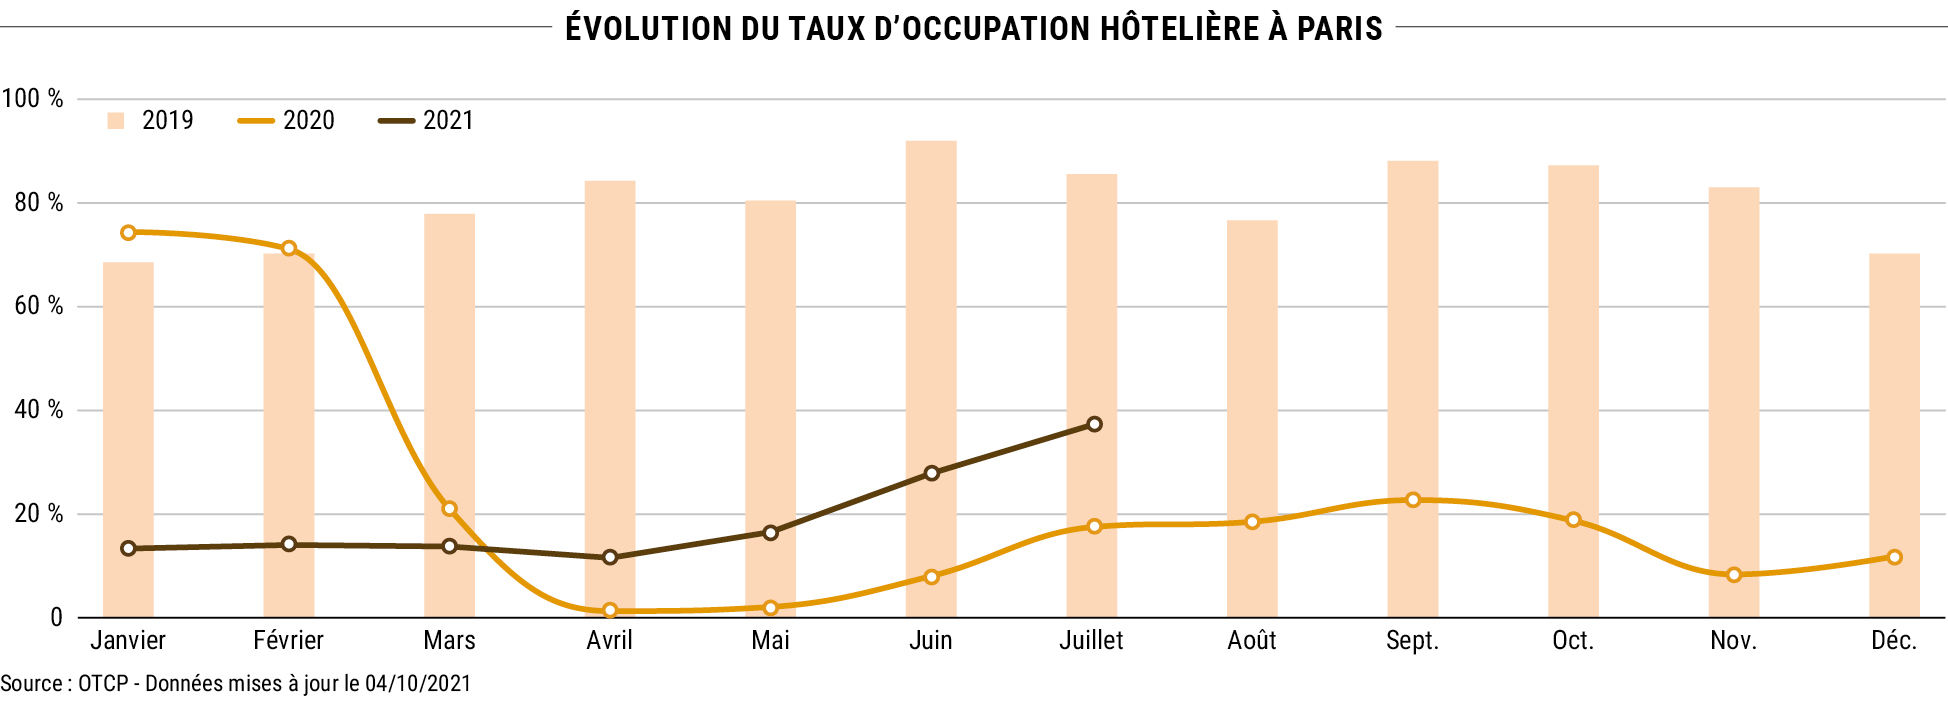 Évolution du taux d’occupation hôtelière à Paris - Source : OTCP - Données mises à jour le 04/10/2021